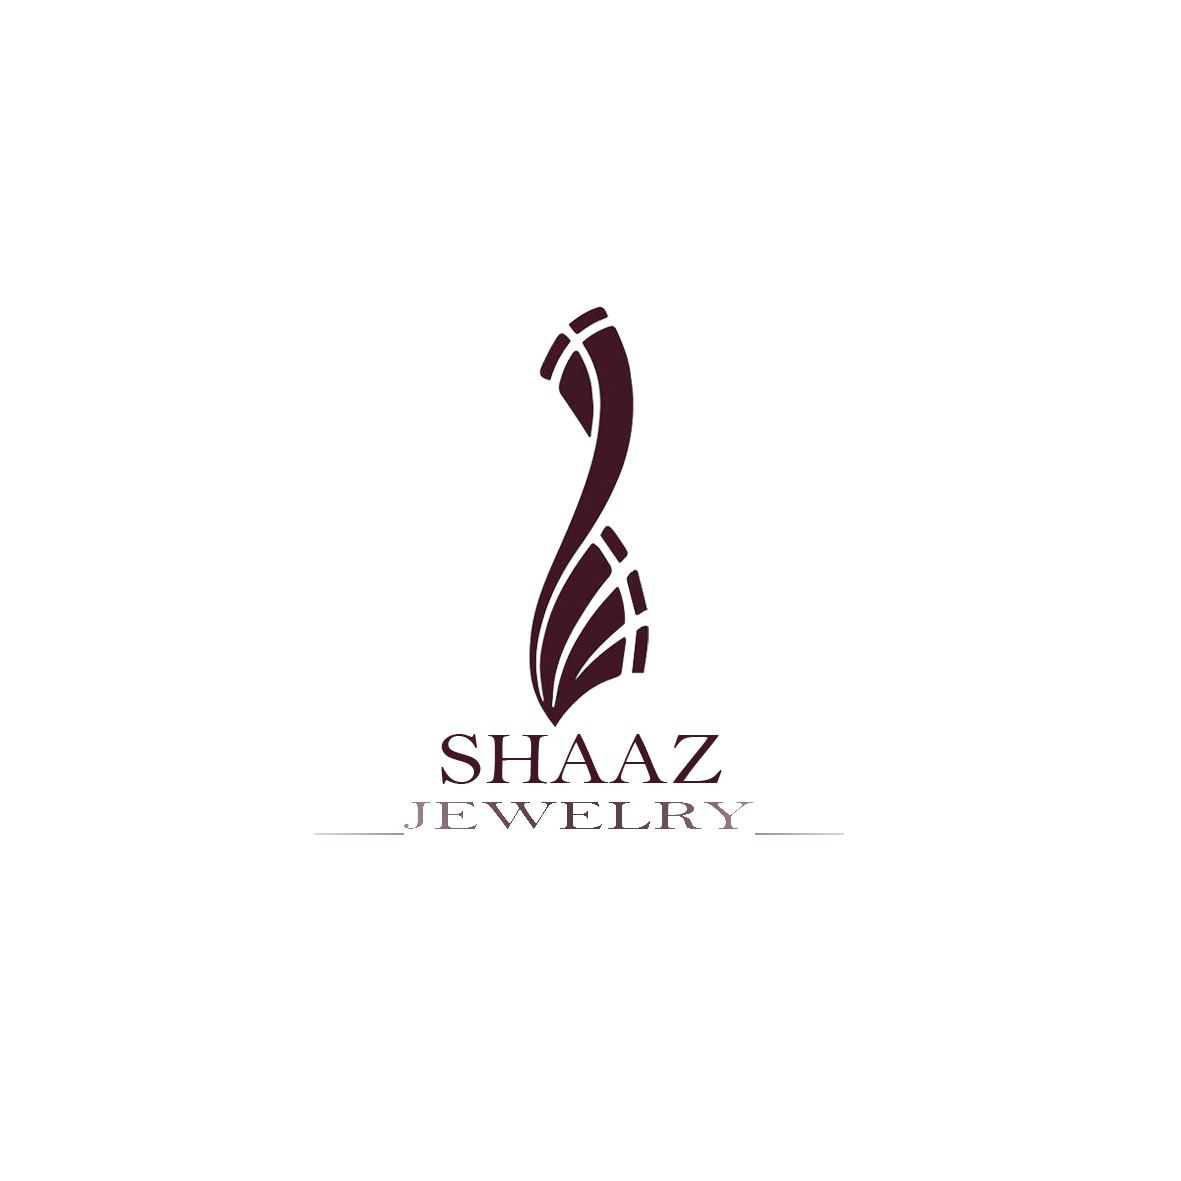 Shaaz Jewelry